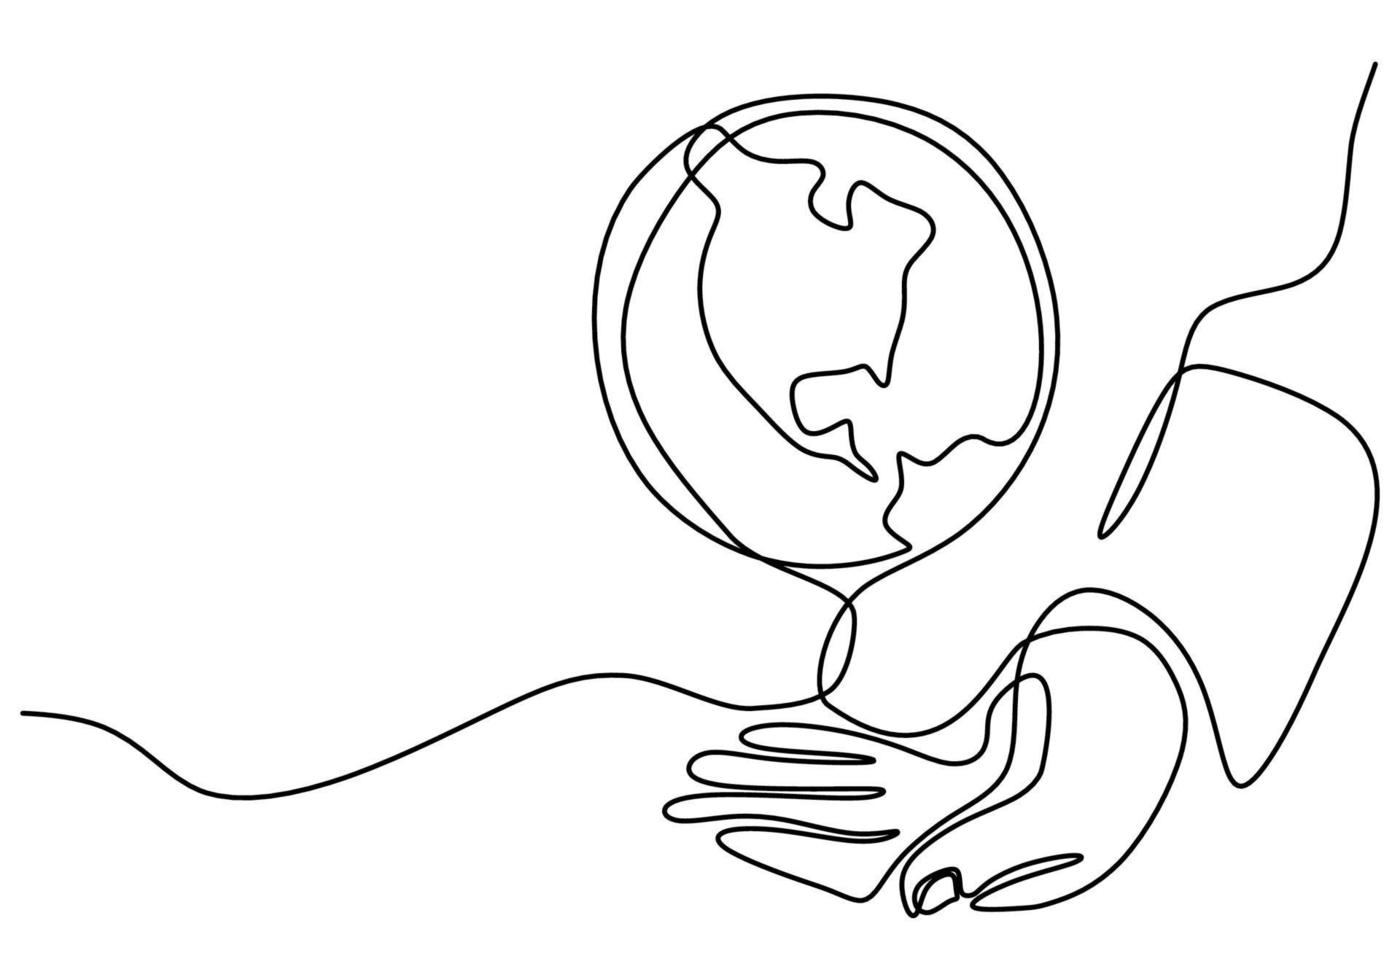 continuo un disegno a tratteggio delle mani che tengono il globo terrestre isolato su sfondo bianco. tema della giornata della terra. una mano umana che tiene il disegno di schizzo disegnato a mano di contorno del pianeta terra del mondo. illustrazione vettoriale